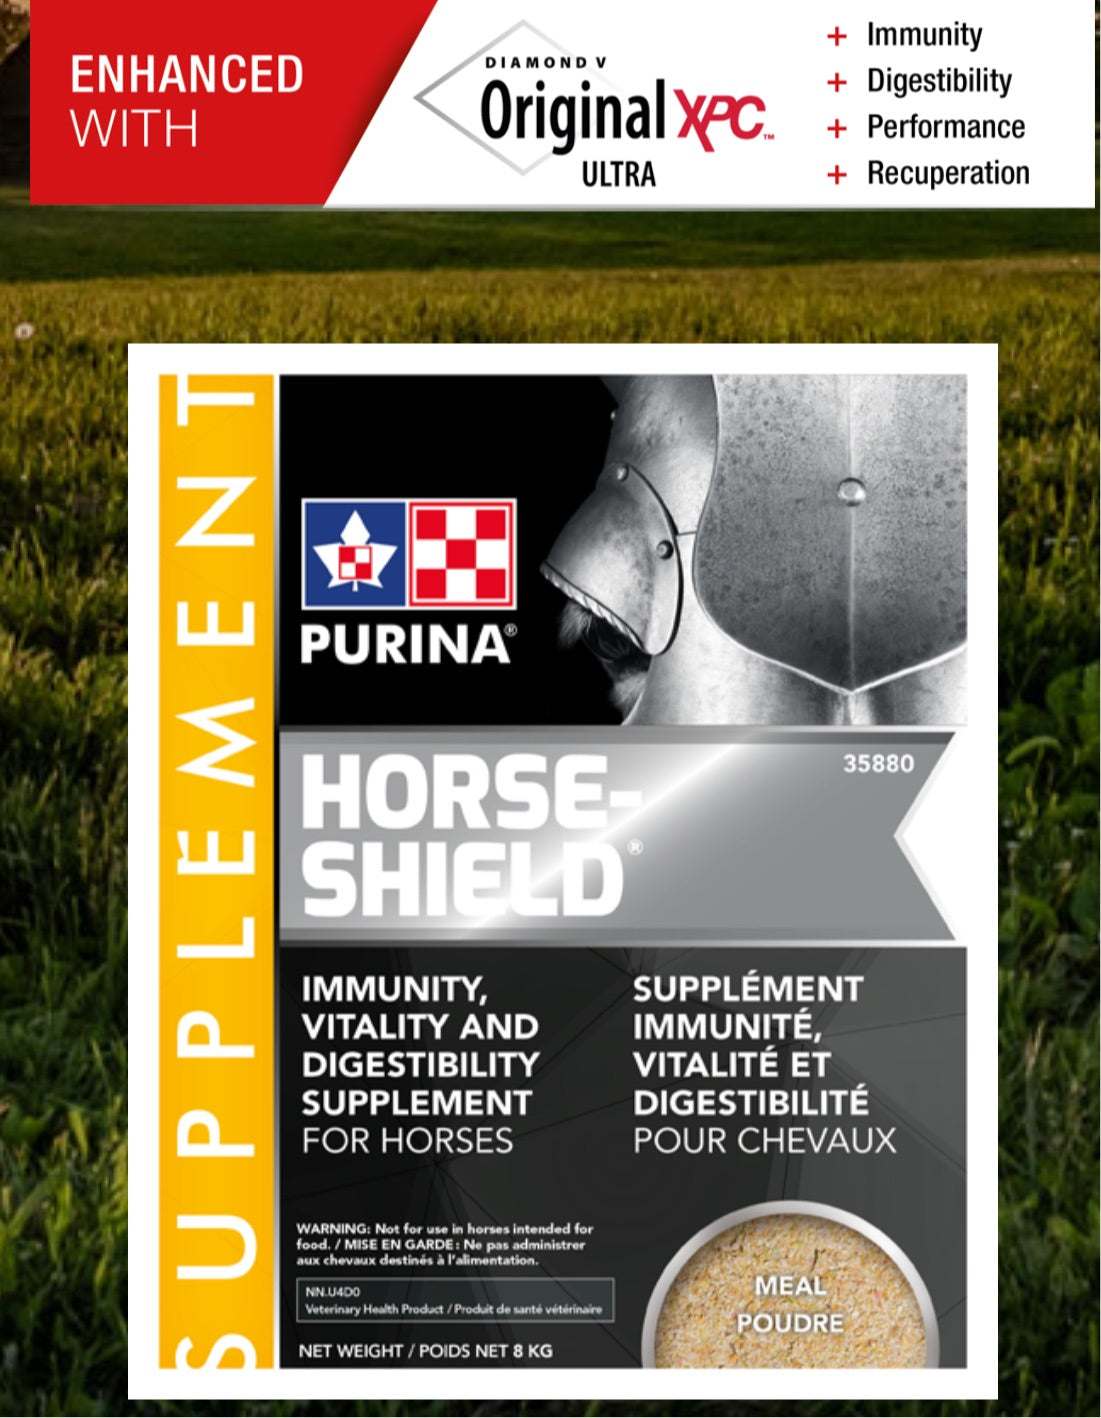 Purina Horse Shield